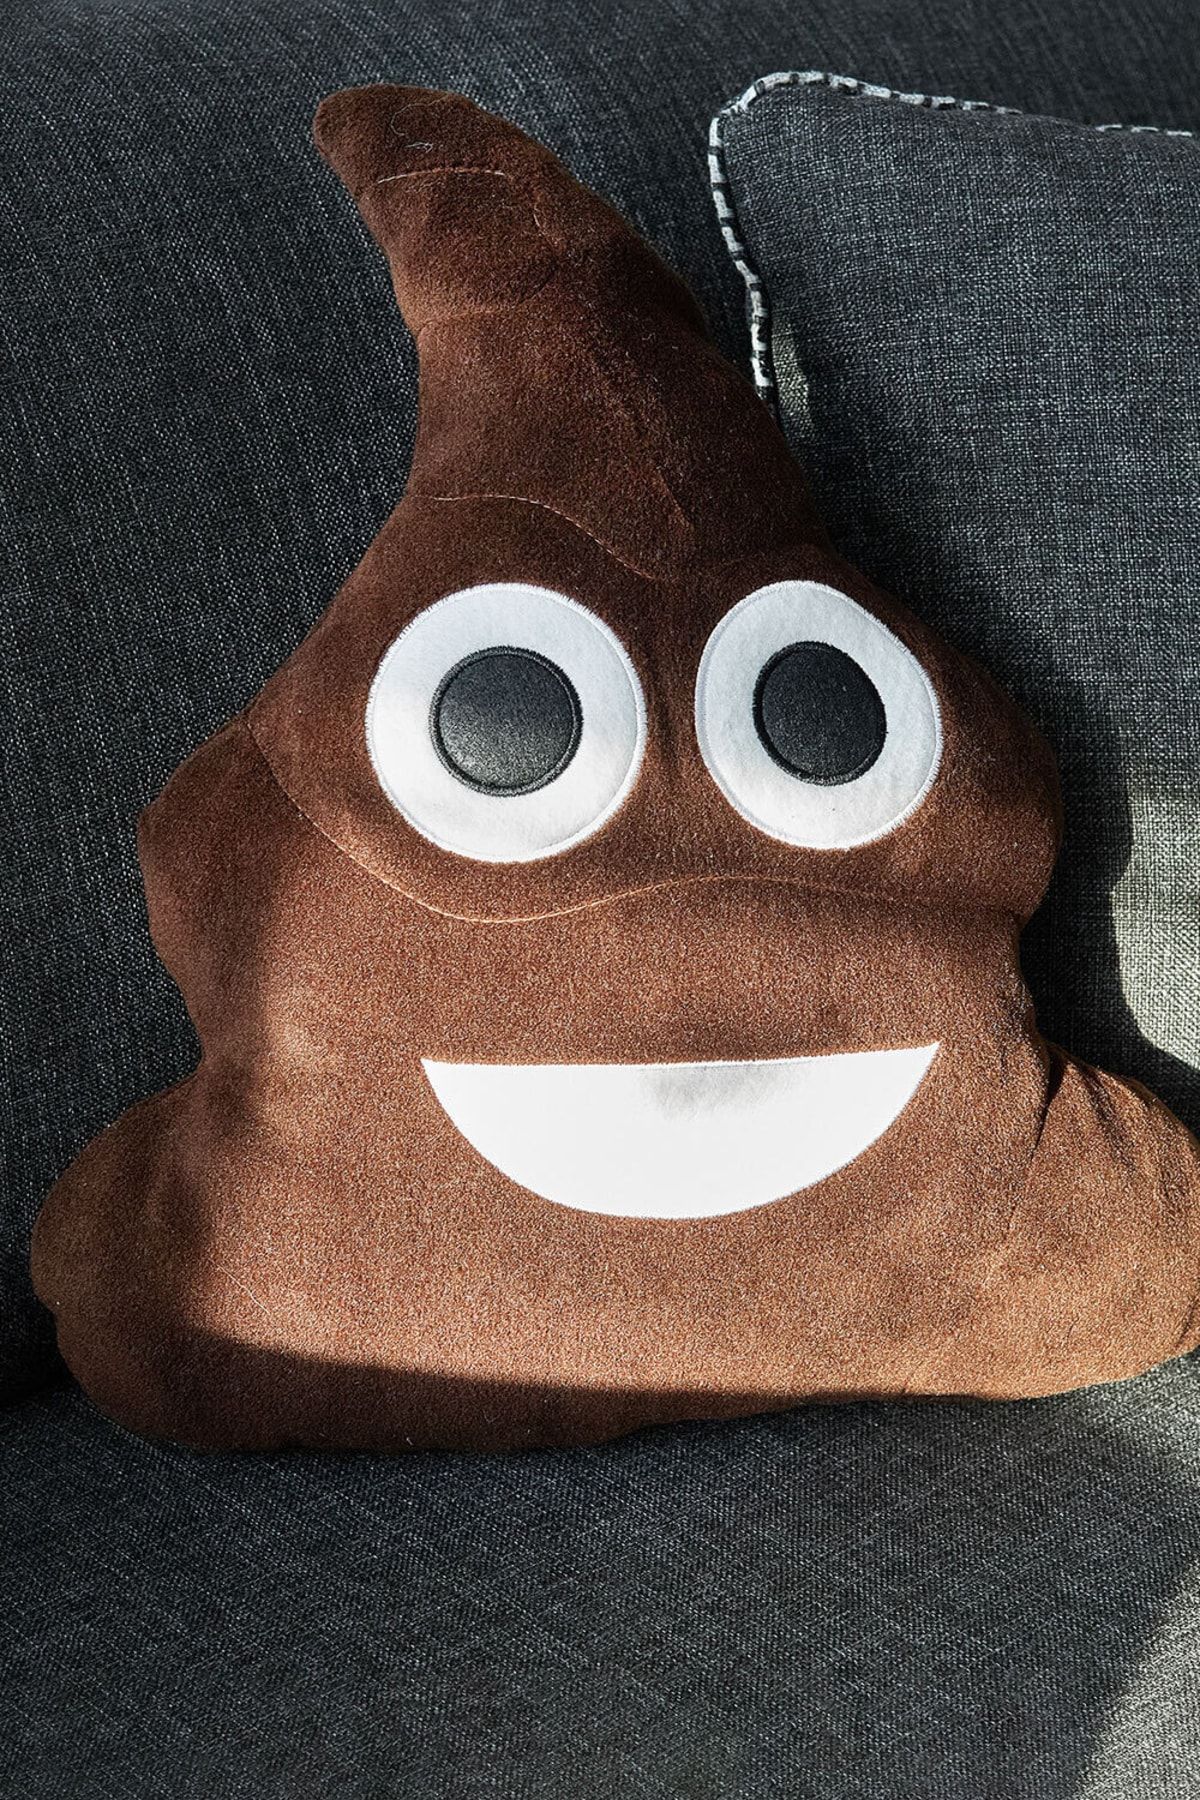 Hediyesepeti Emoji Yastık - Gülen Kaka Yastık - Poo Emojili Sevimli Peluş Yastık